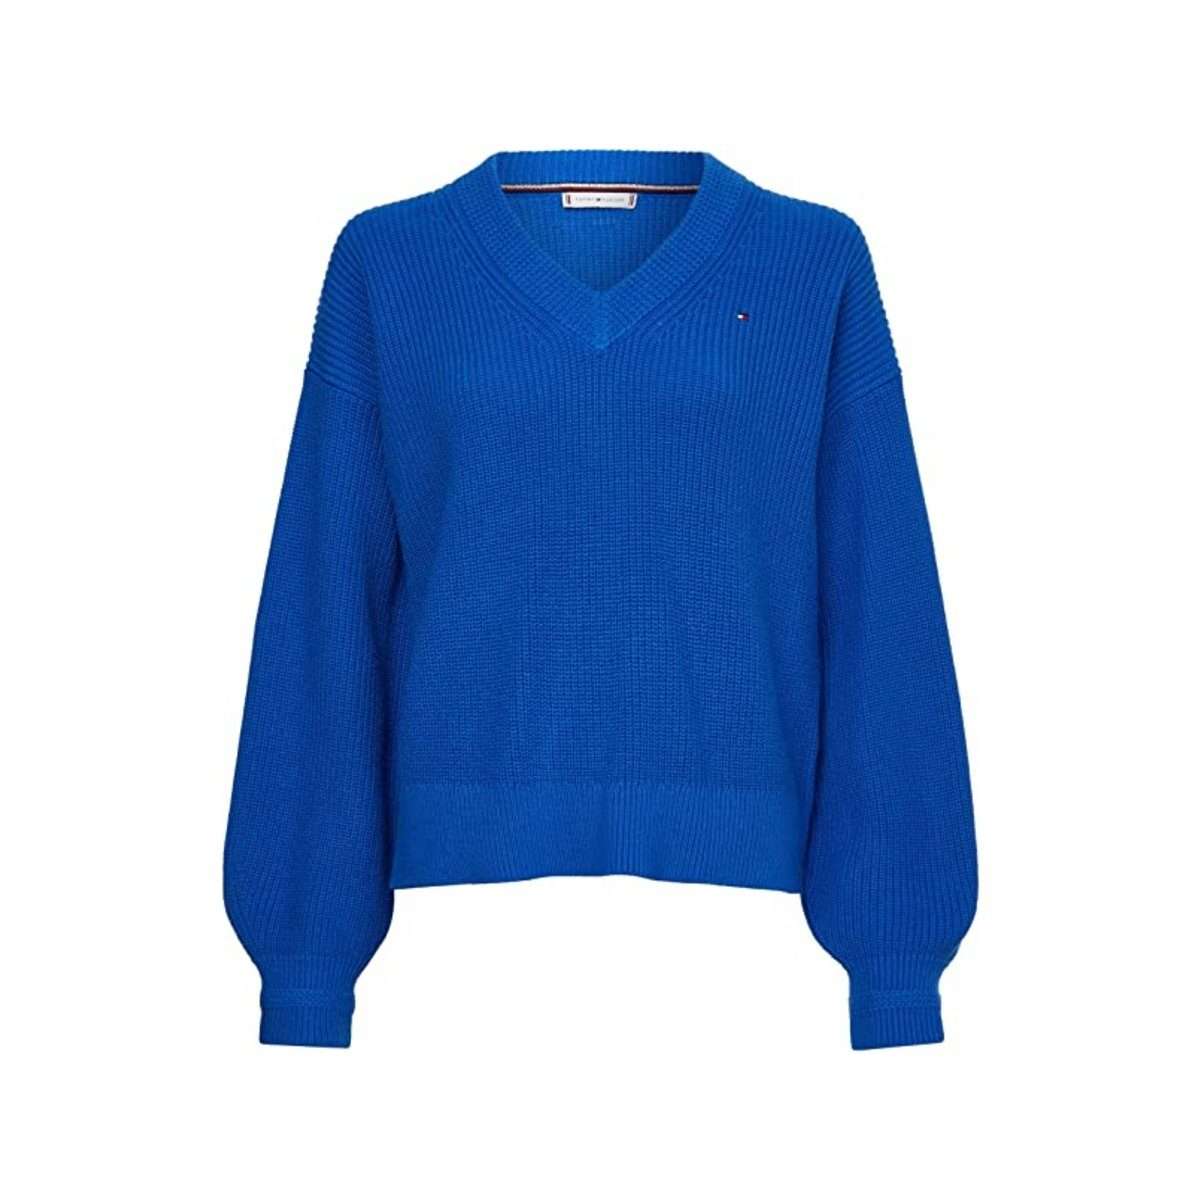 Длинный свитер синий (1 шт.)